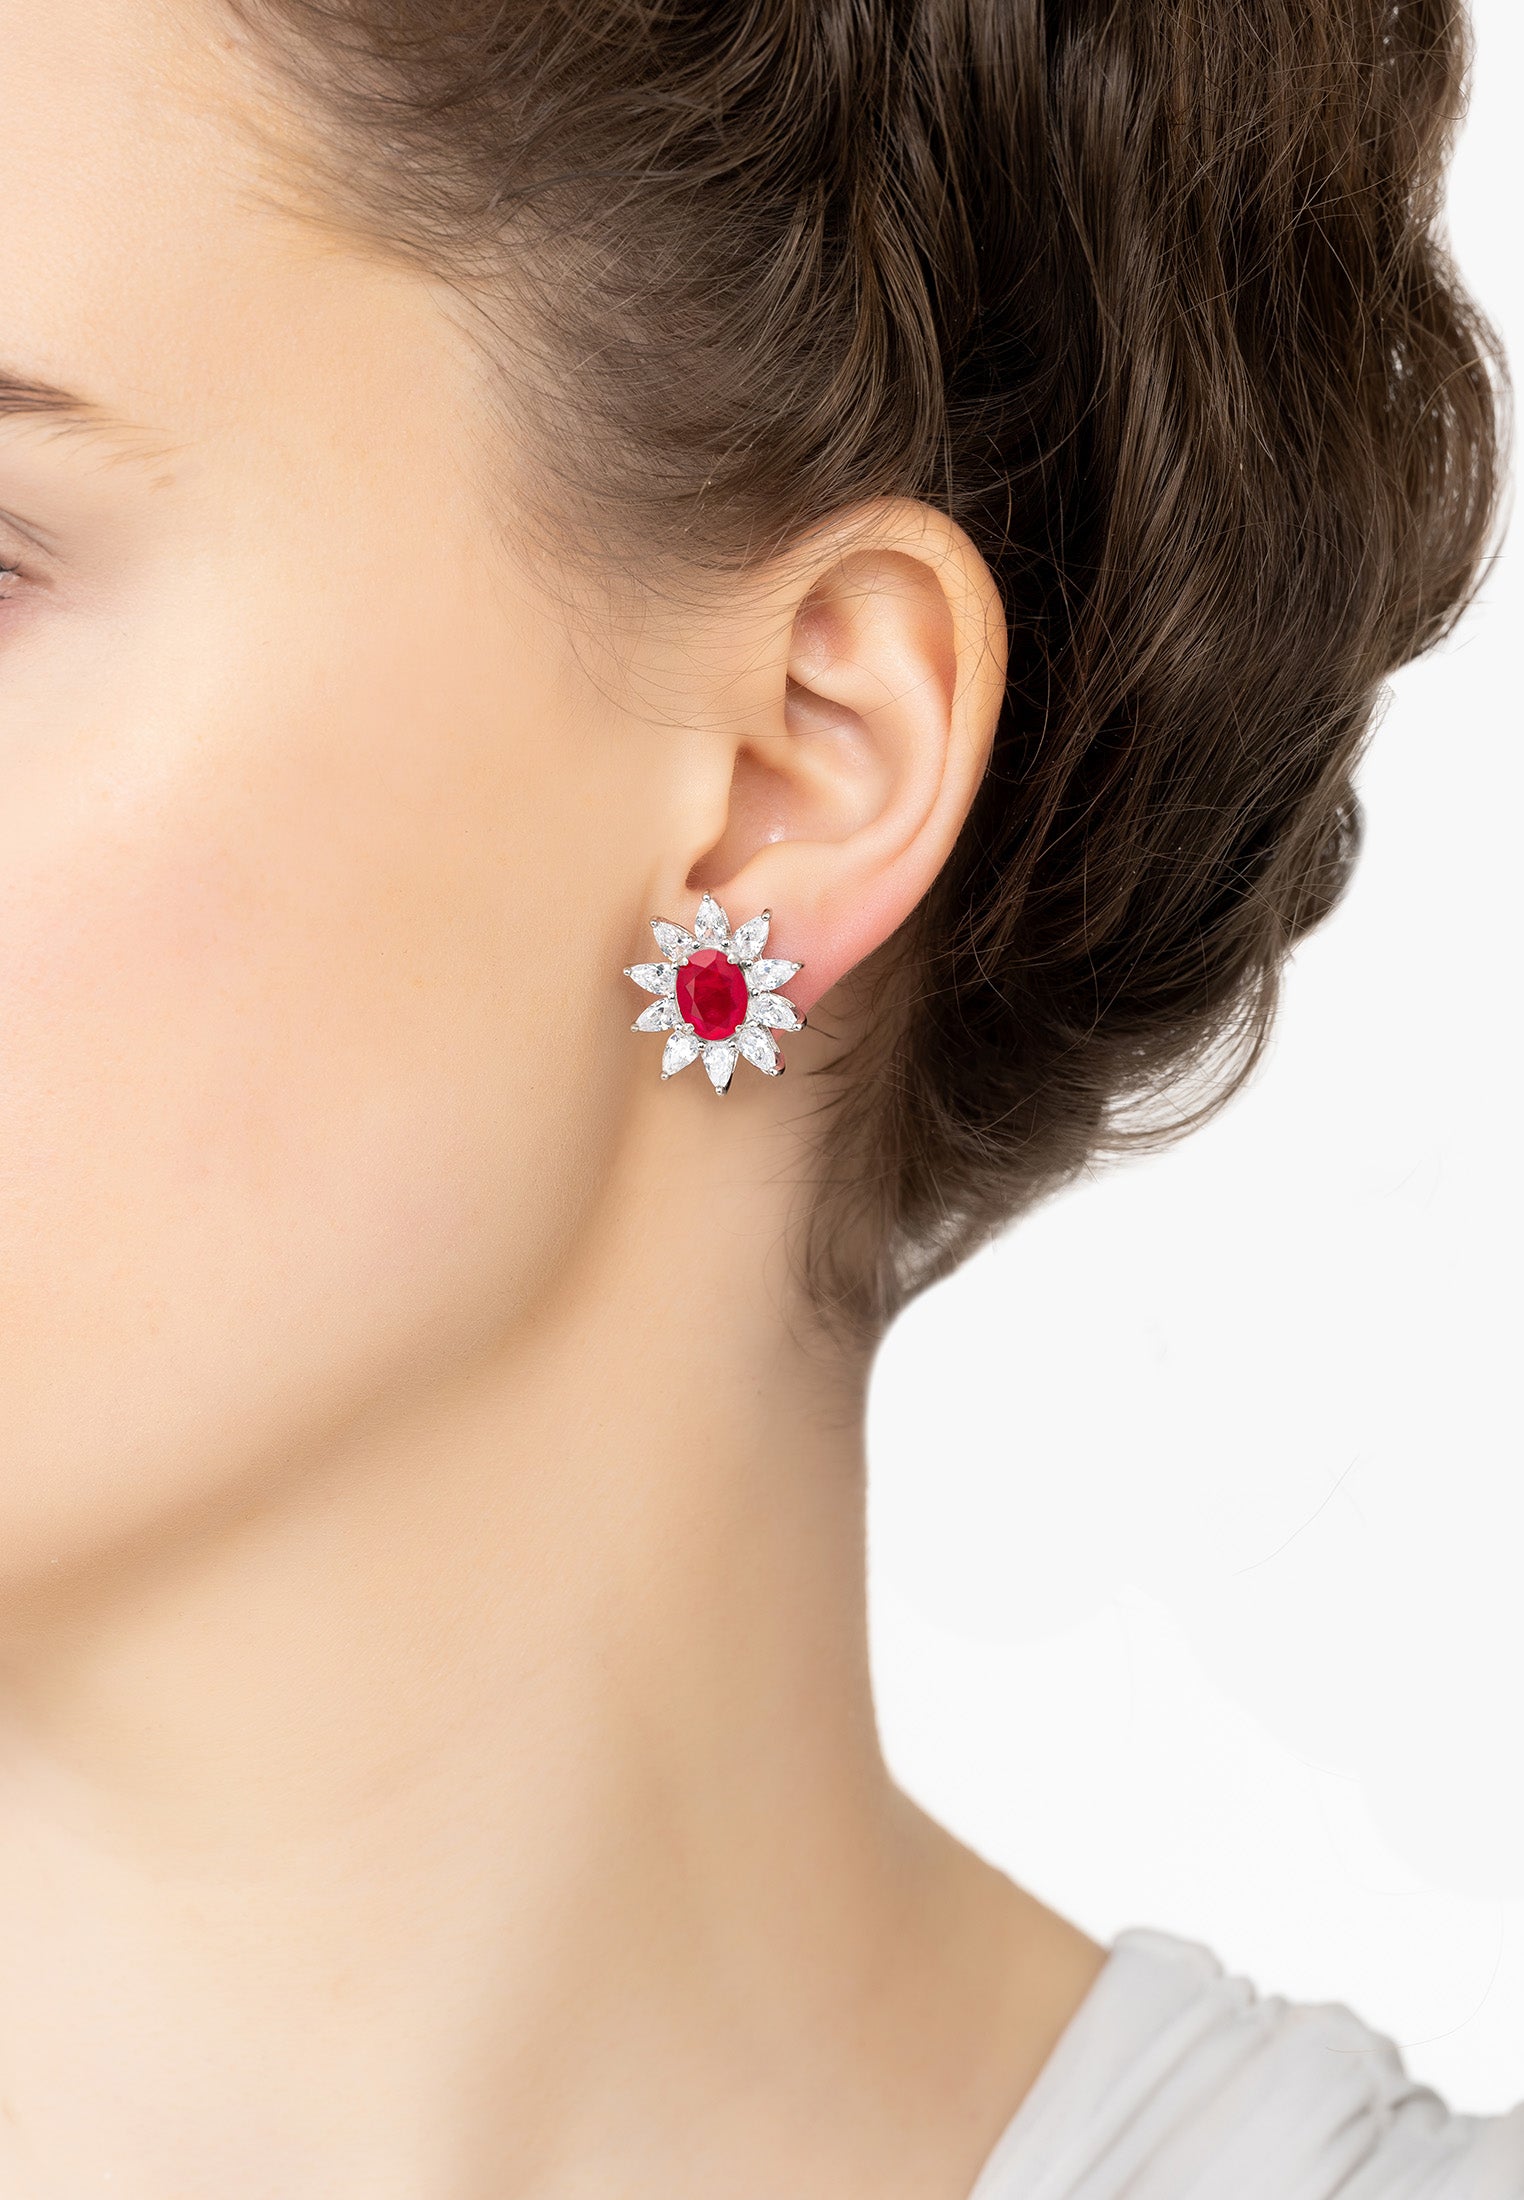 Daisy Gemstone Stud Earrings Pink Tourmaline Silver